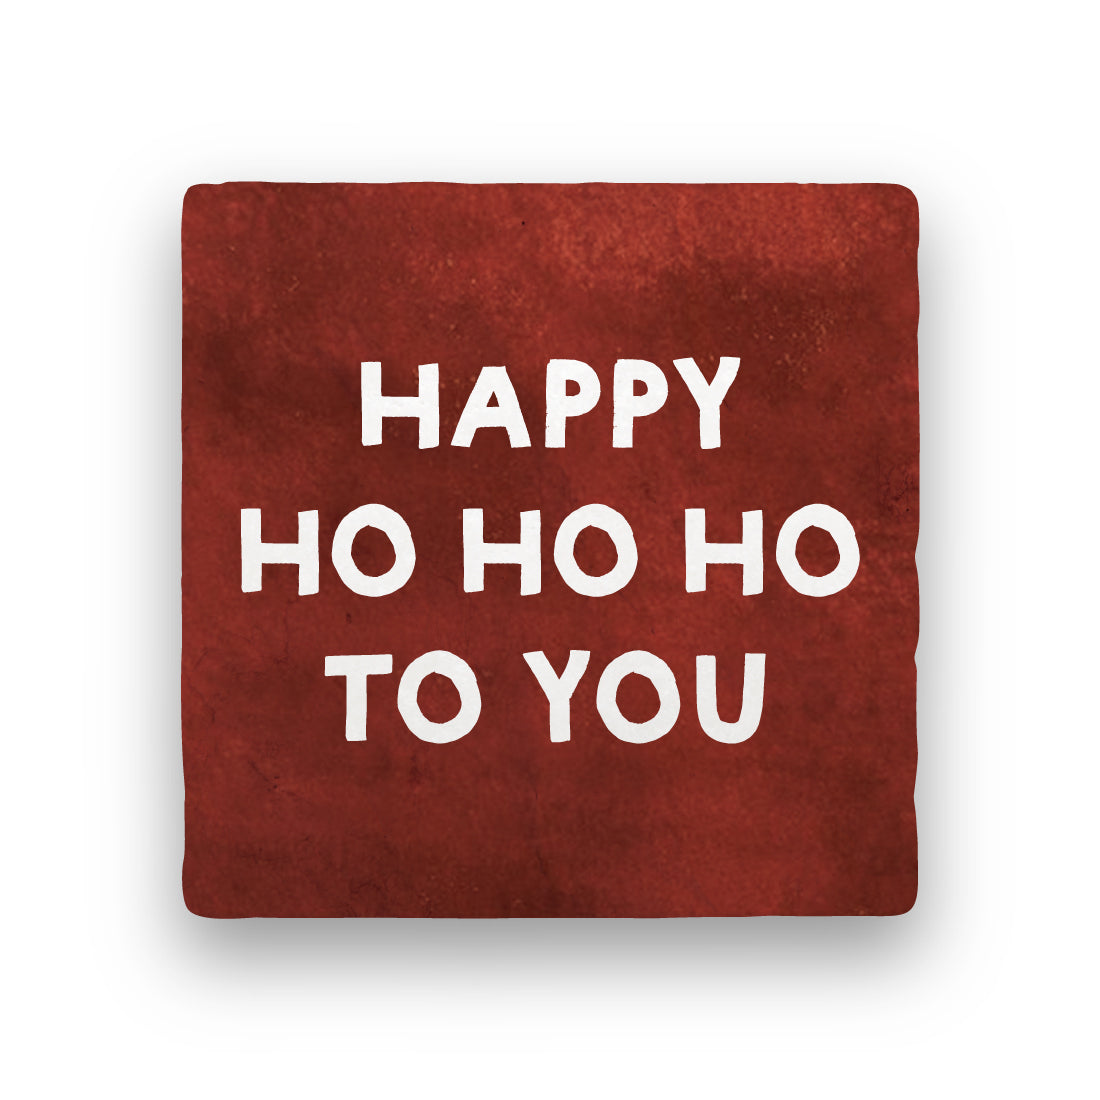 Happy Ho Ho Ho